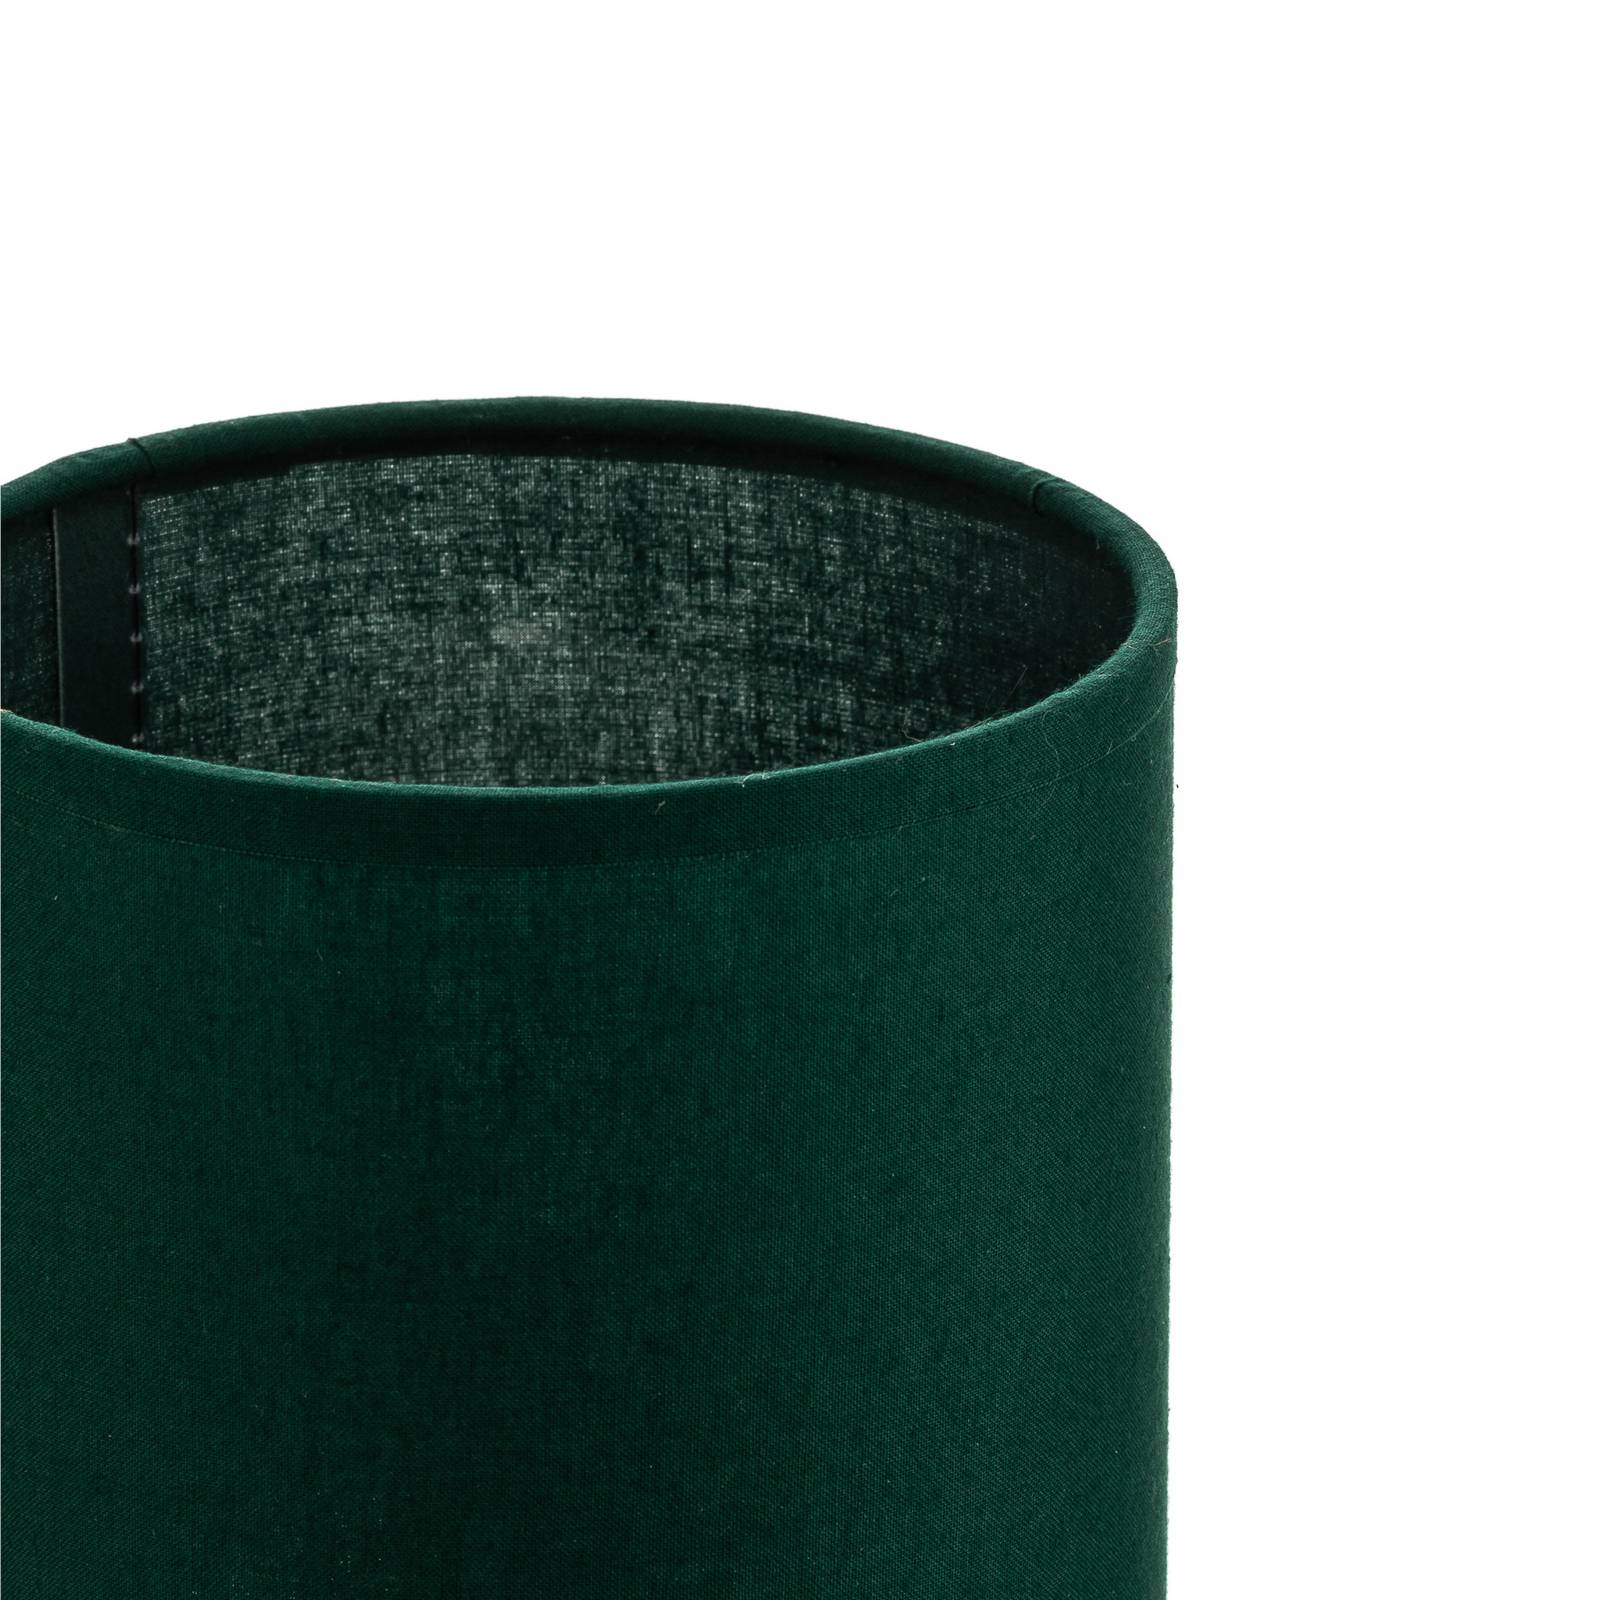 Lampenschirm Roller, grün, Ø 13 cm, Höhe 15 cm von Duolla